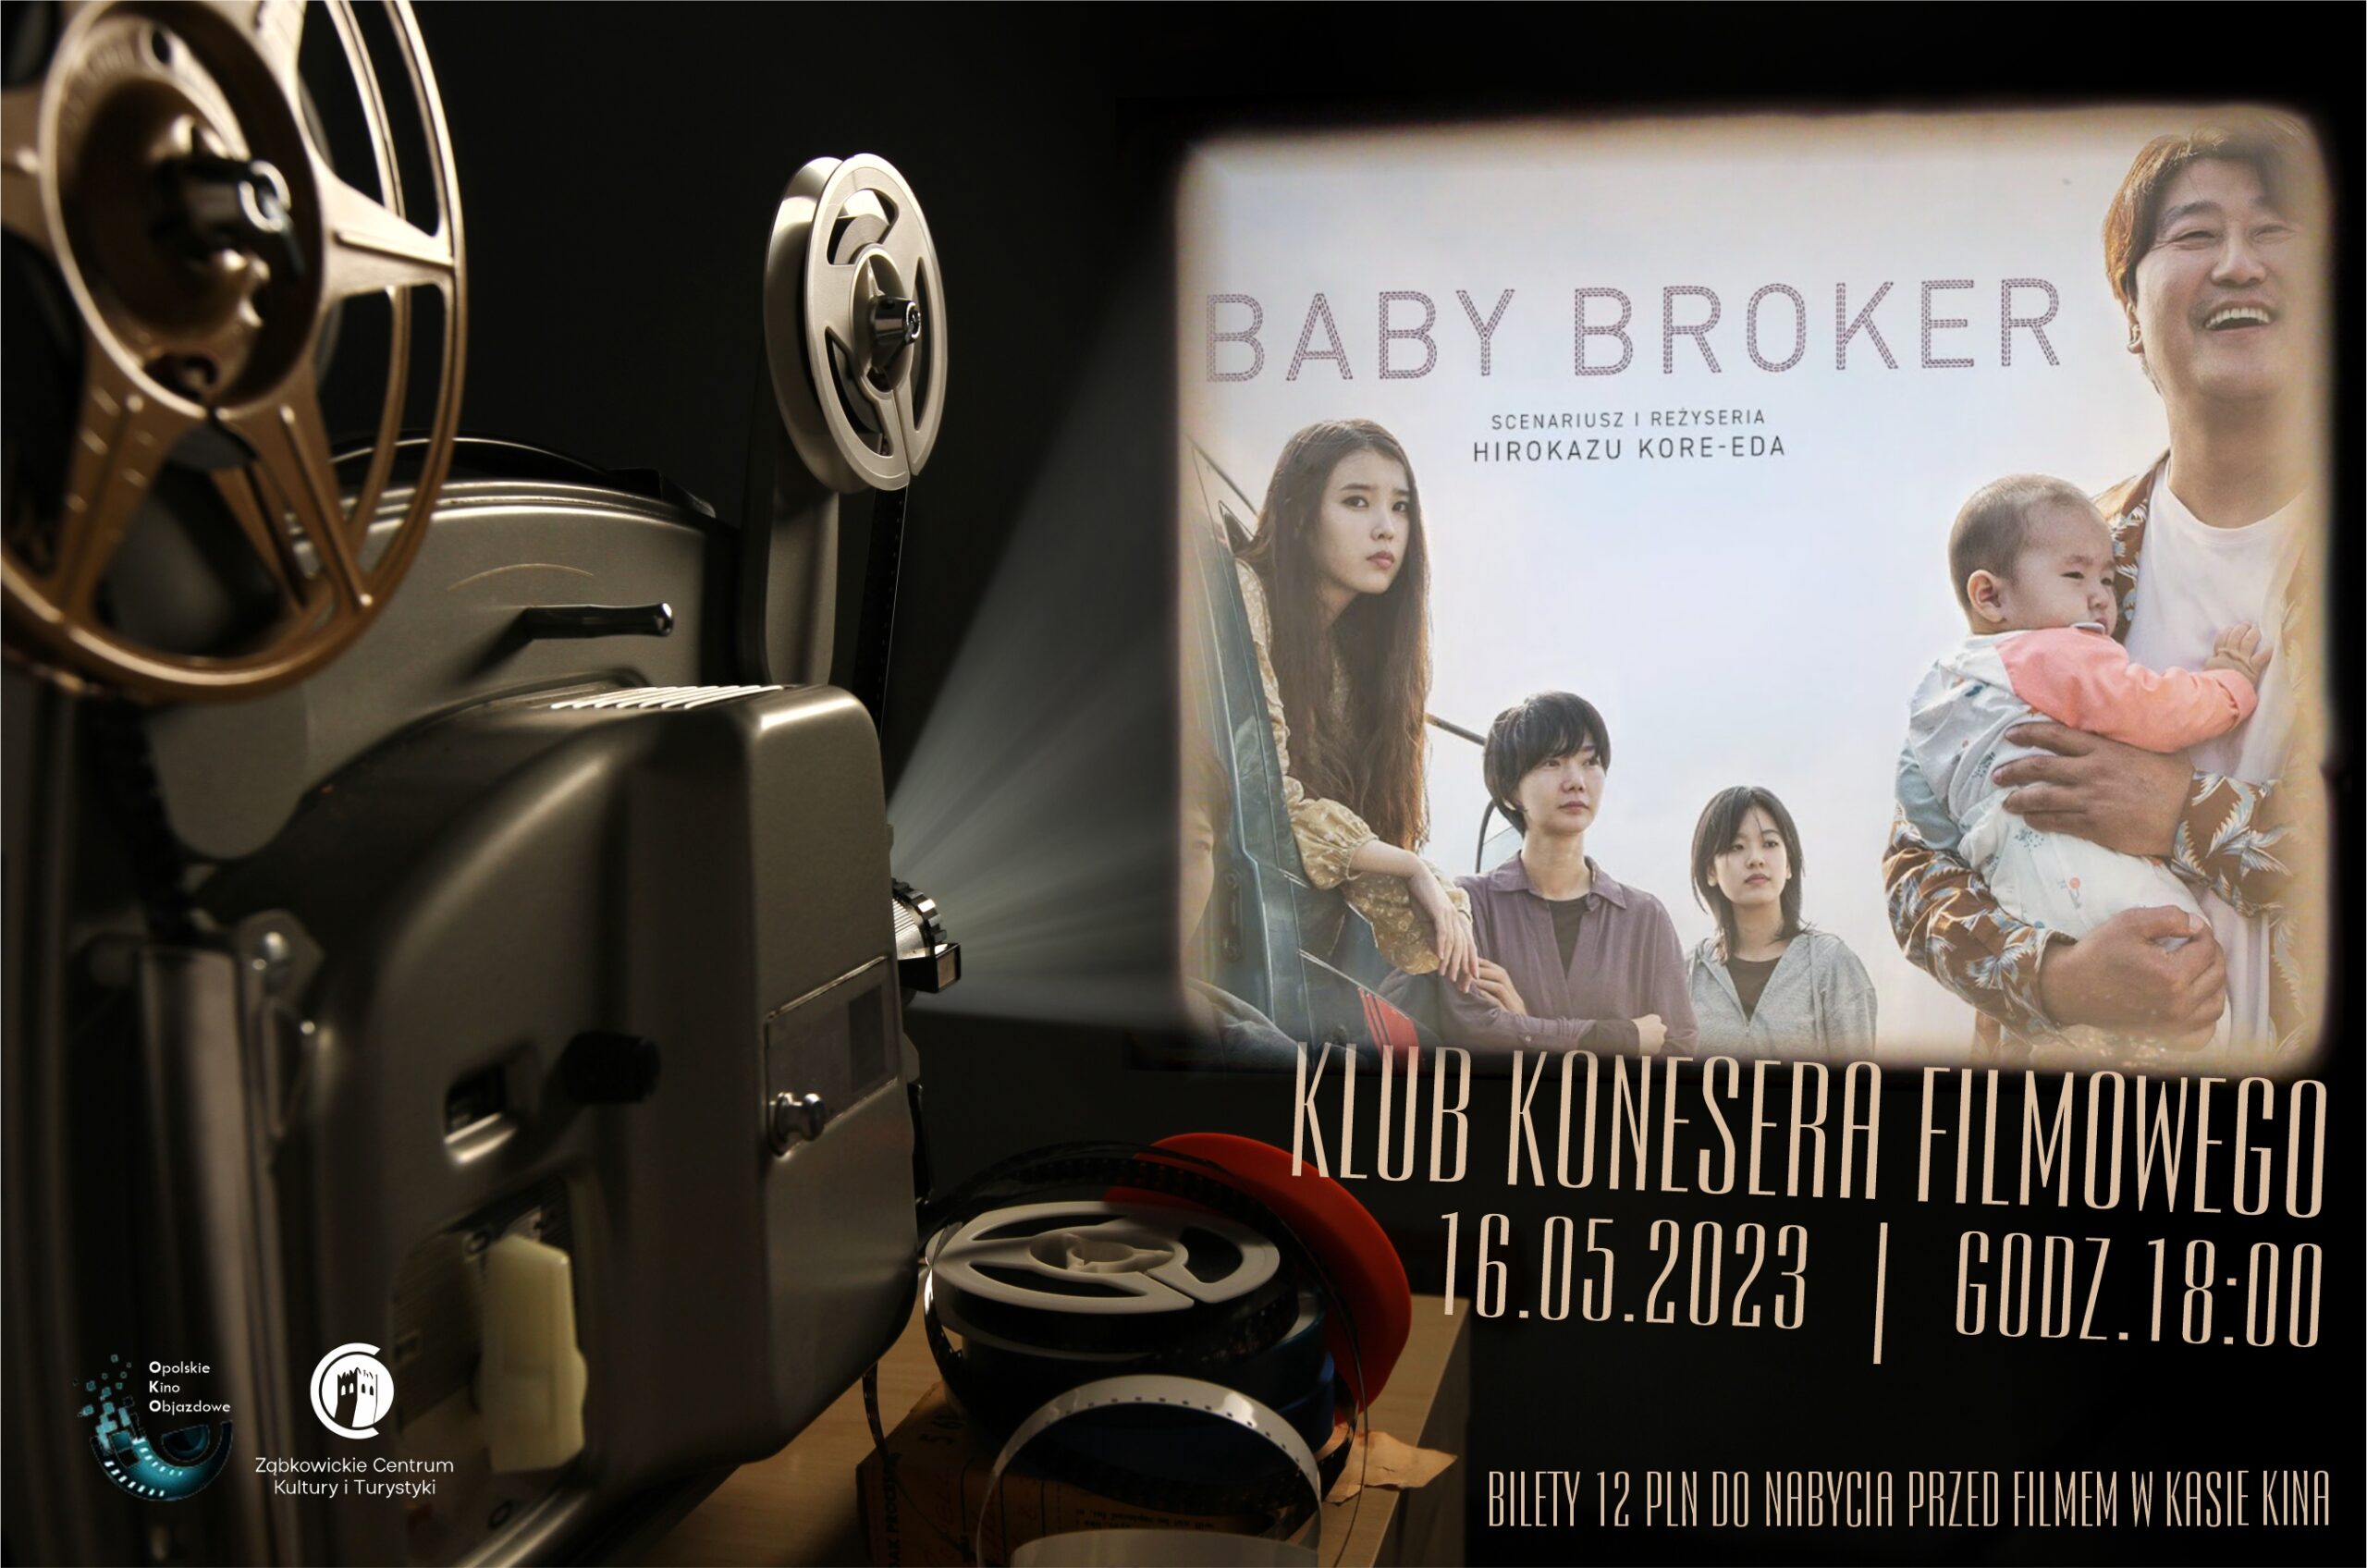 Plakat informacyjny o pokazie filmu "Baby Broker" 16.05.2023 o godzinie 18:00 w kinie Ząbkowickiego Centrum Kultury i Turystyki.